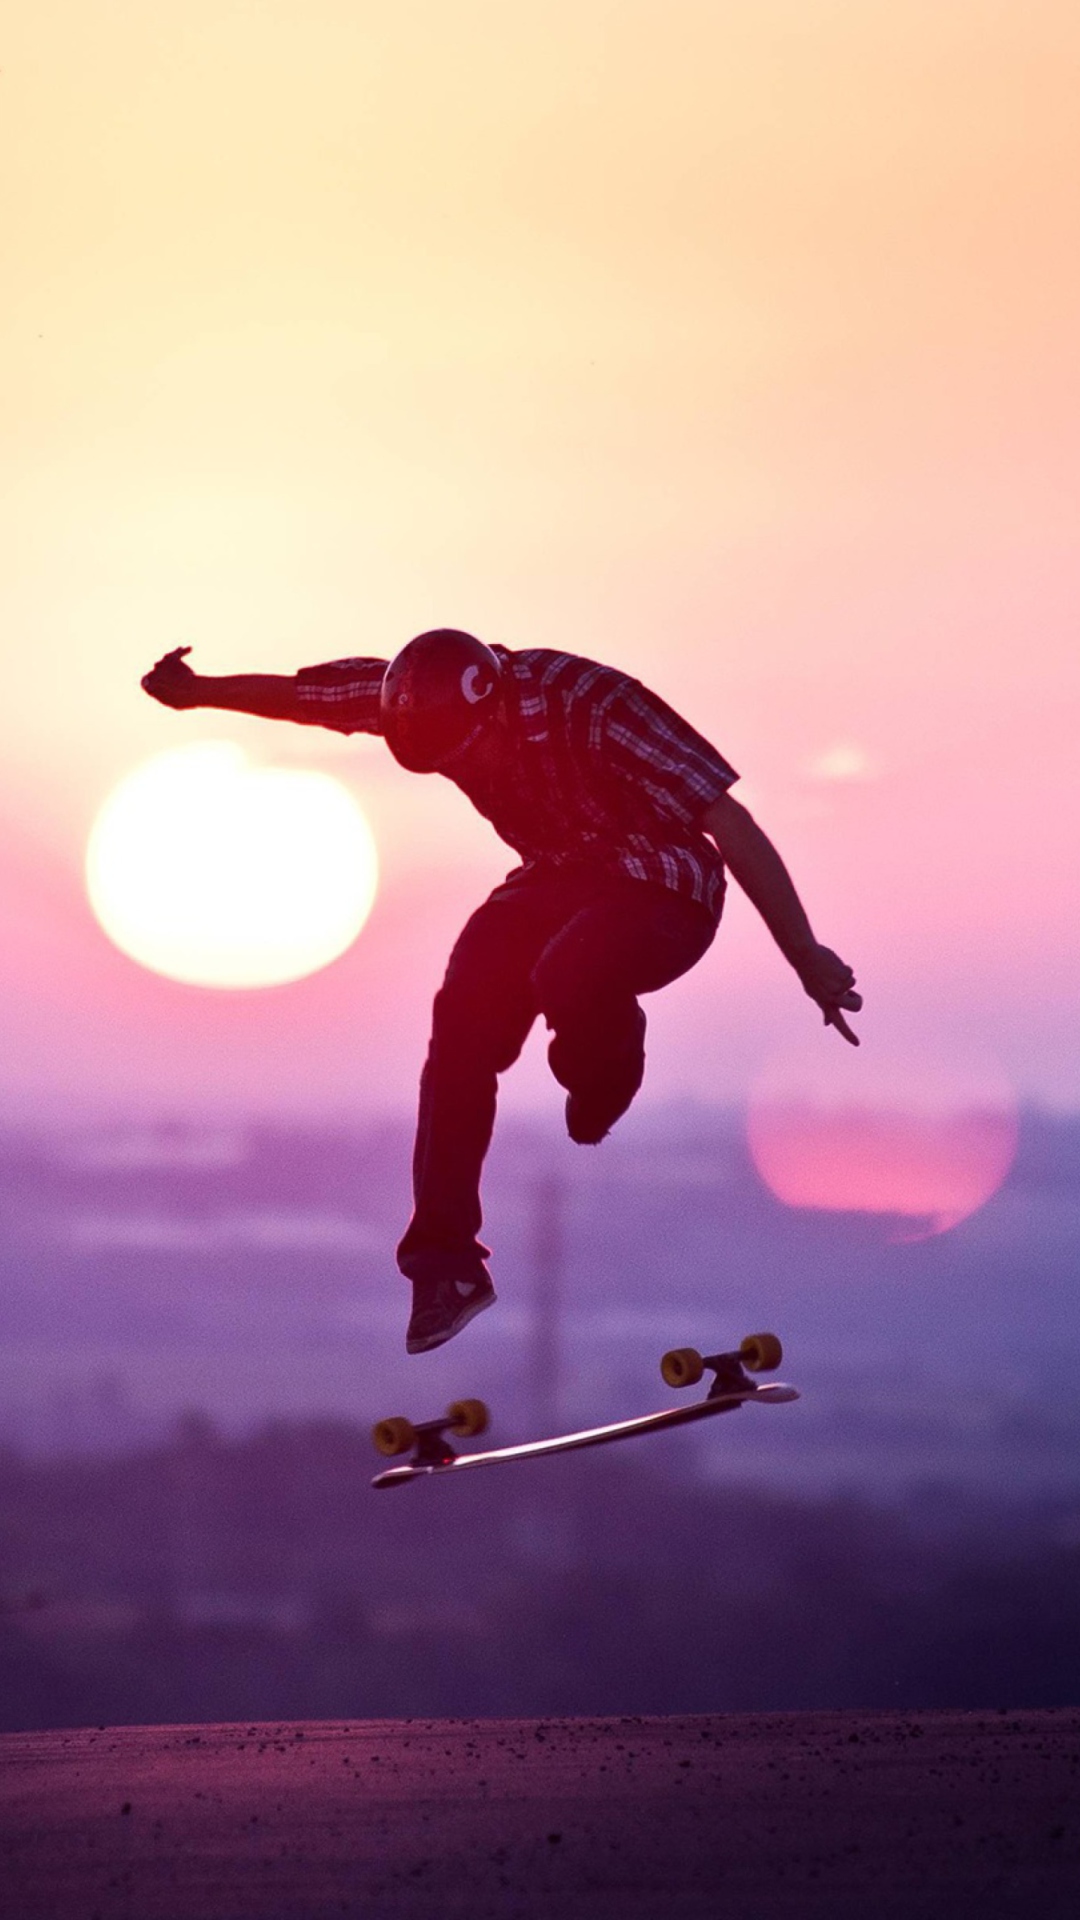 Sunset Skateboard Jump wallpaper 1080x1920